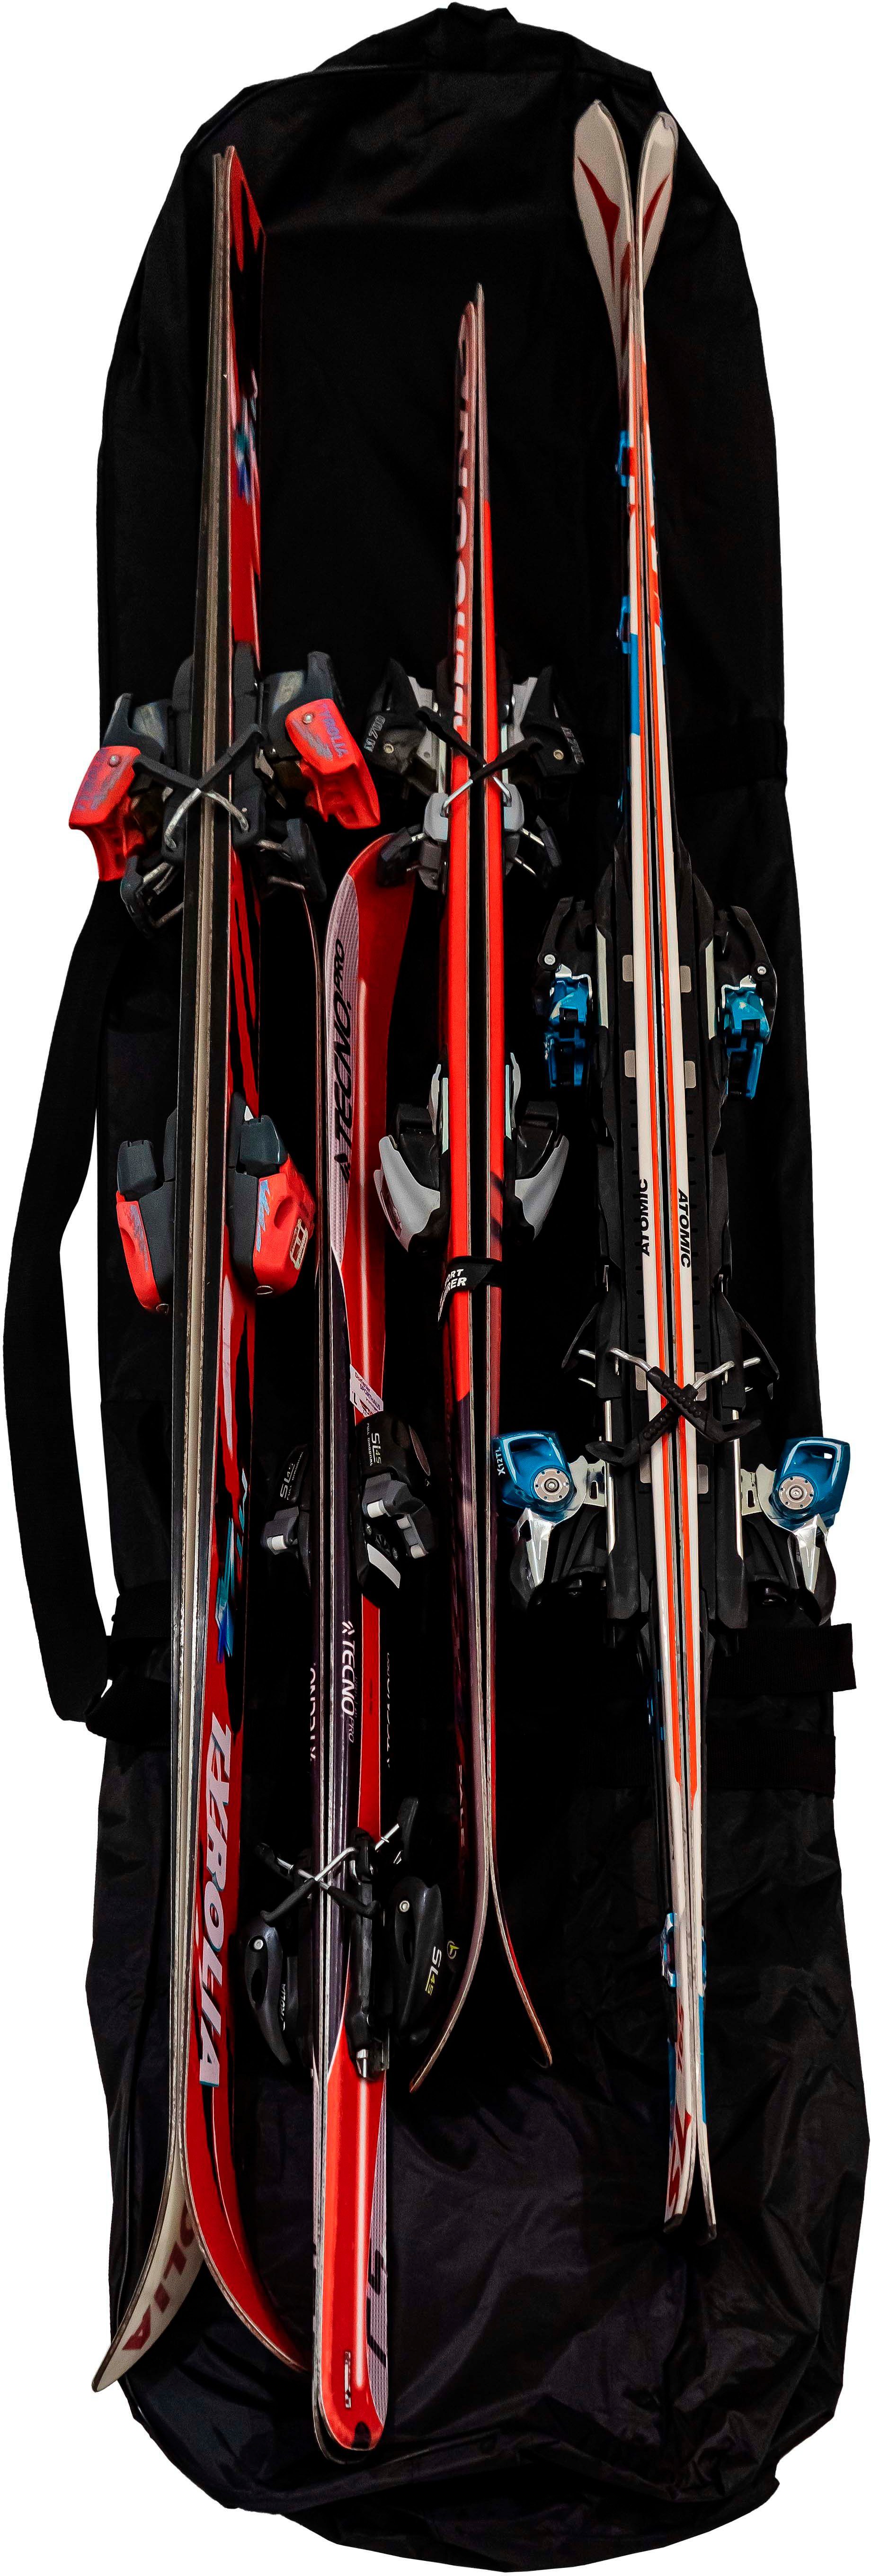 Skisack, Volumen, bis 4 Paar zu 160L schwarz cm, 200x20x40 passend Petex ca. Skitasche Ski, Aufbewahrungsstasche,